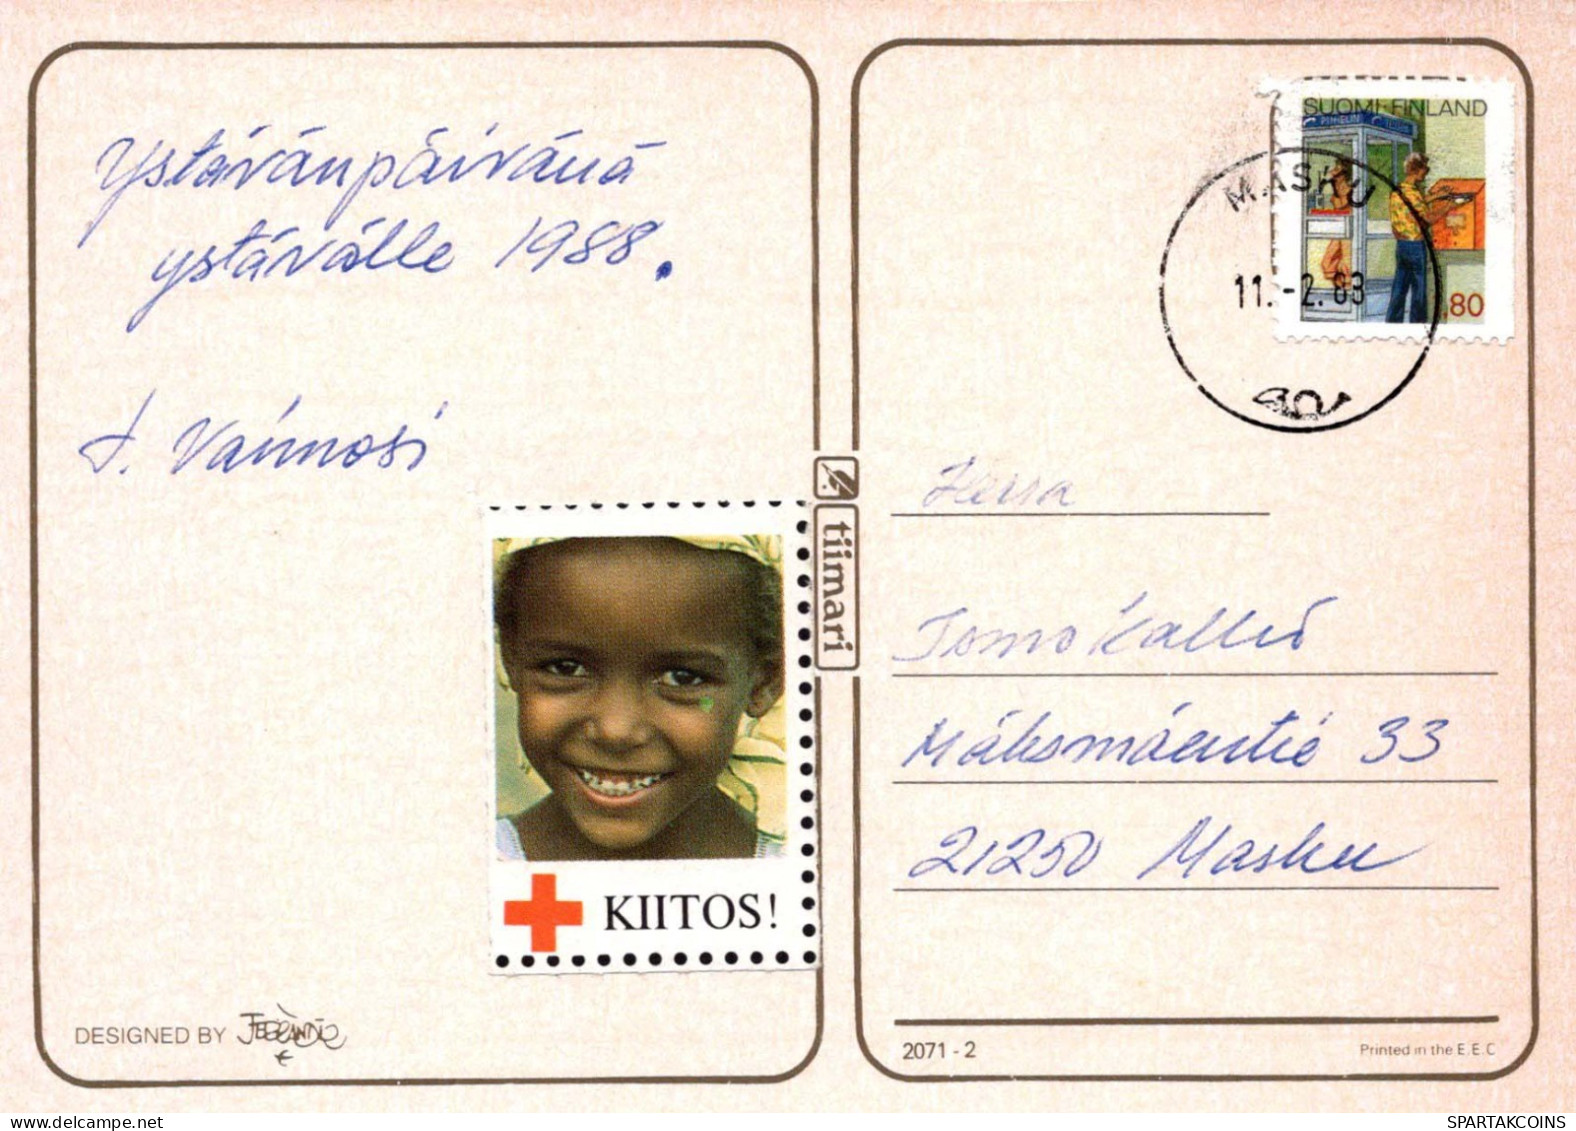 NIÑOS NIÑOS Escena S Paisajes Vintage Tarjeta Postal CPSM #PBU651.ES - Escenas & Paisajes